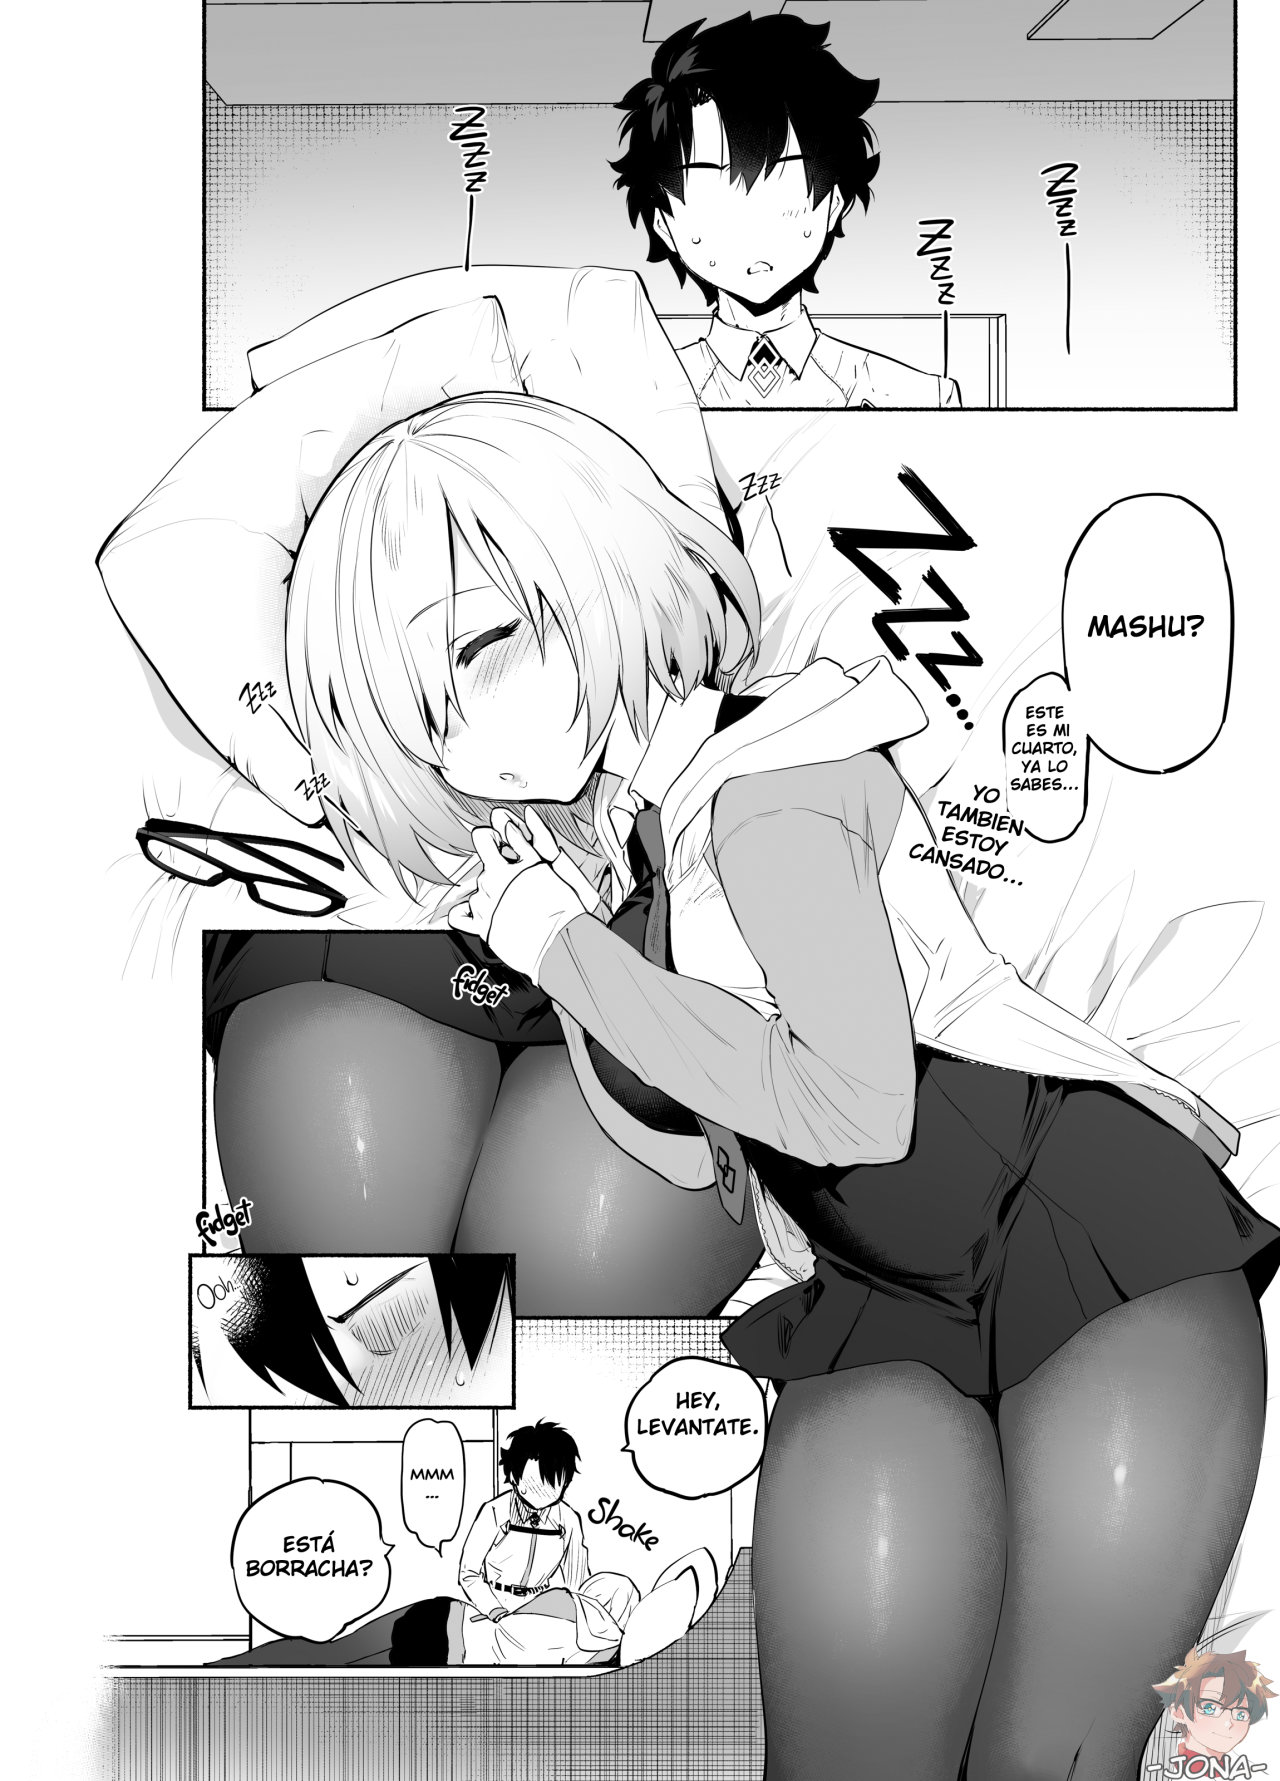 Hazme cosas desagradables mientras duermo (Fate Grand Order) - Yuzuha - 1